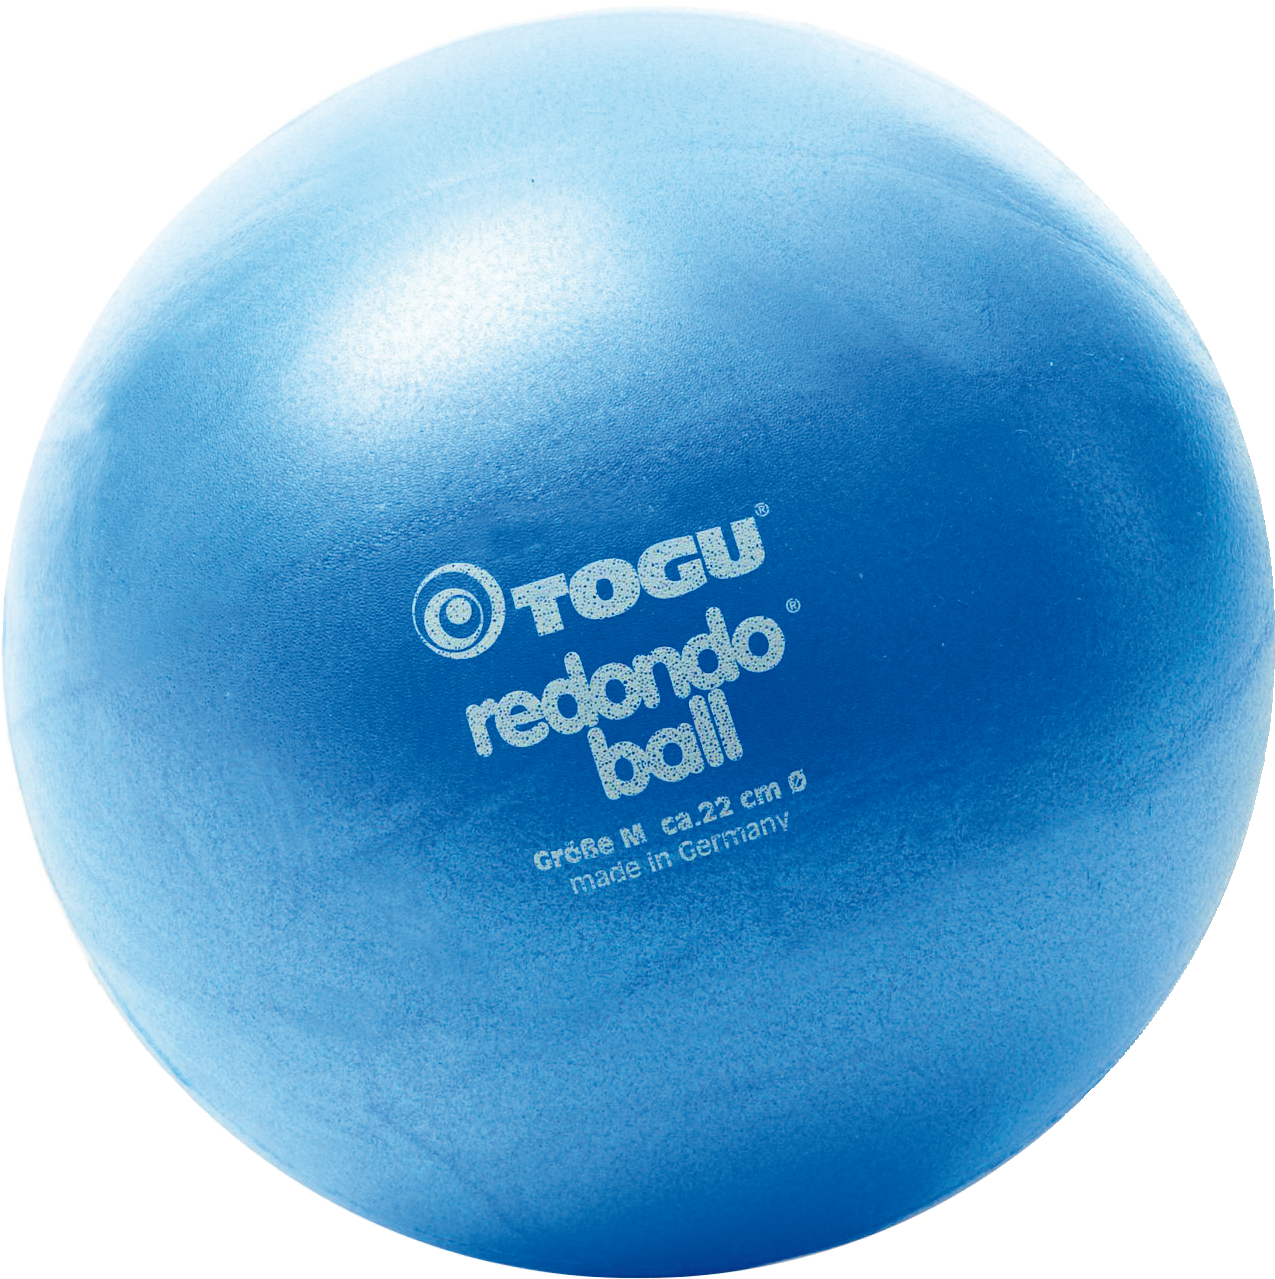 Effektive Übungen mit dem Redondo-Ball